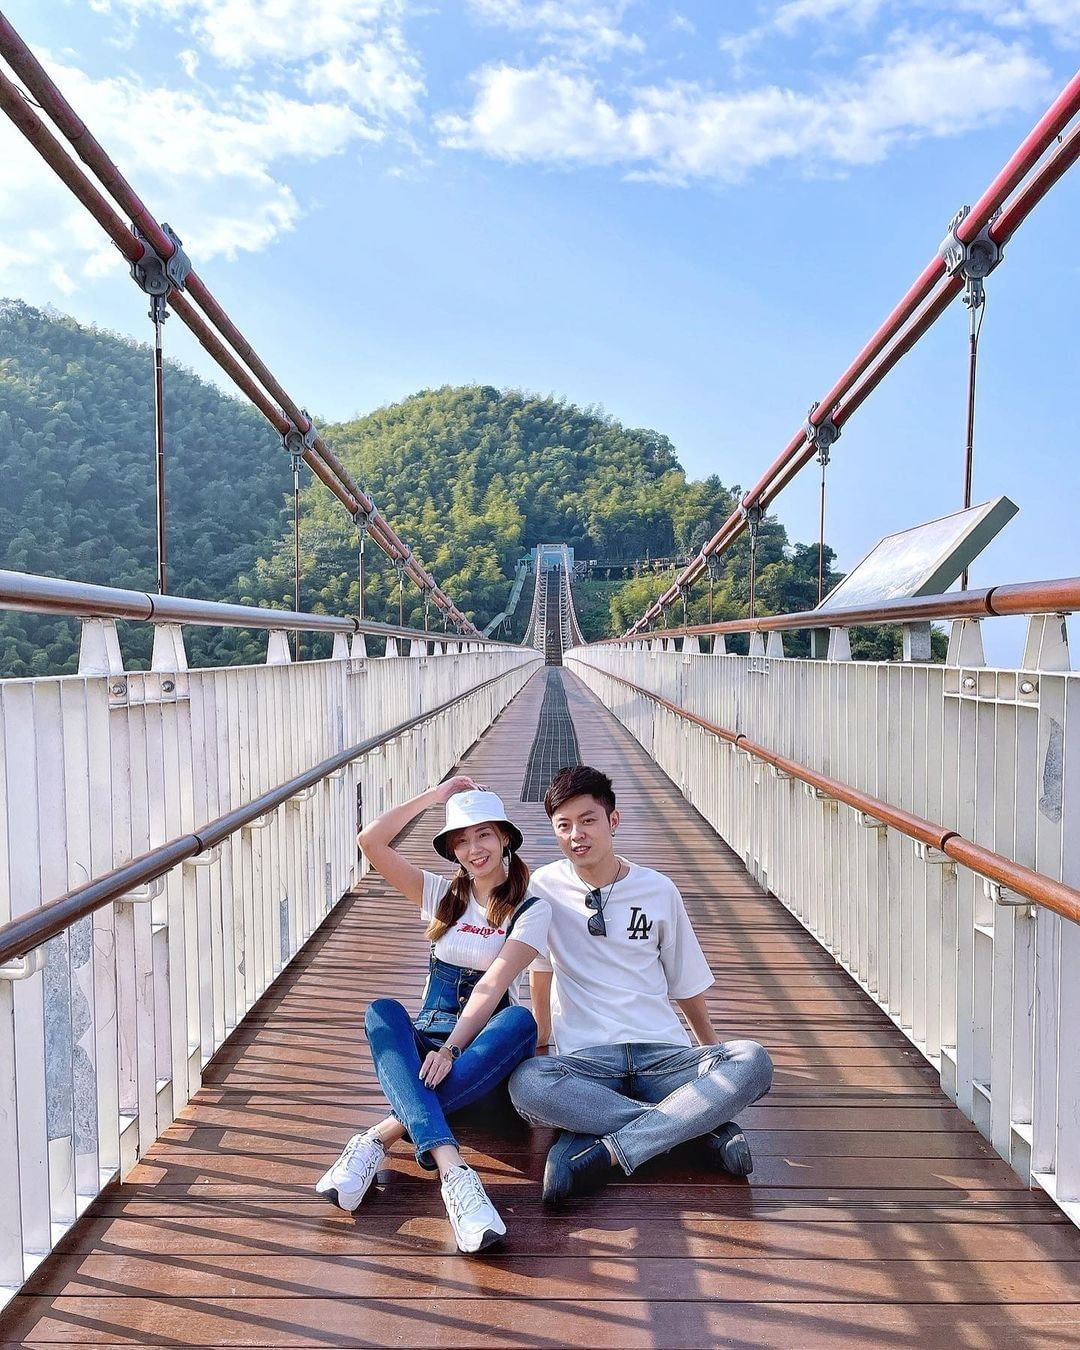 在全台海拔最高的景觀橋感覺可以碰觸到雲朵感染藍天與太陽的熱情！-⠀⠀⠀⠀⠀⠀⠀⠀⠀⠀⠀感謝 @yue_9.3  分享的美照-⠀⠀⠀...